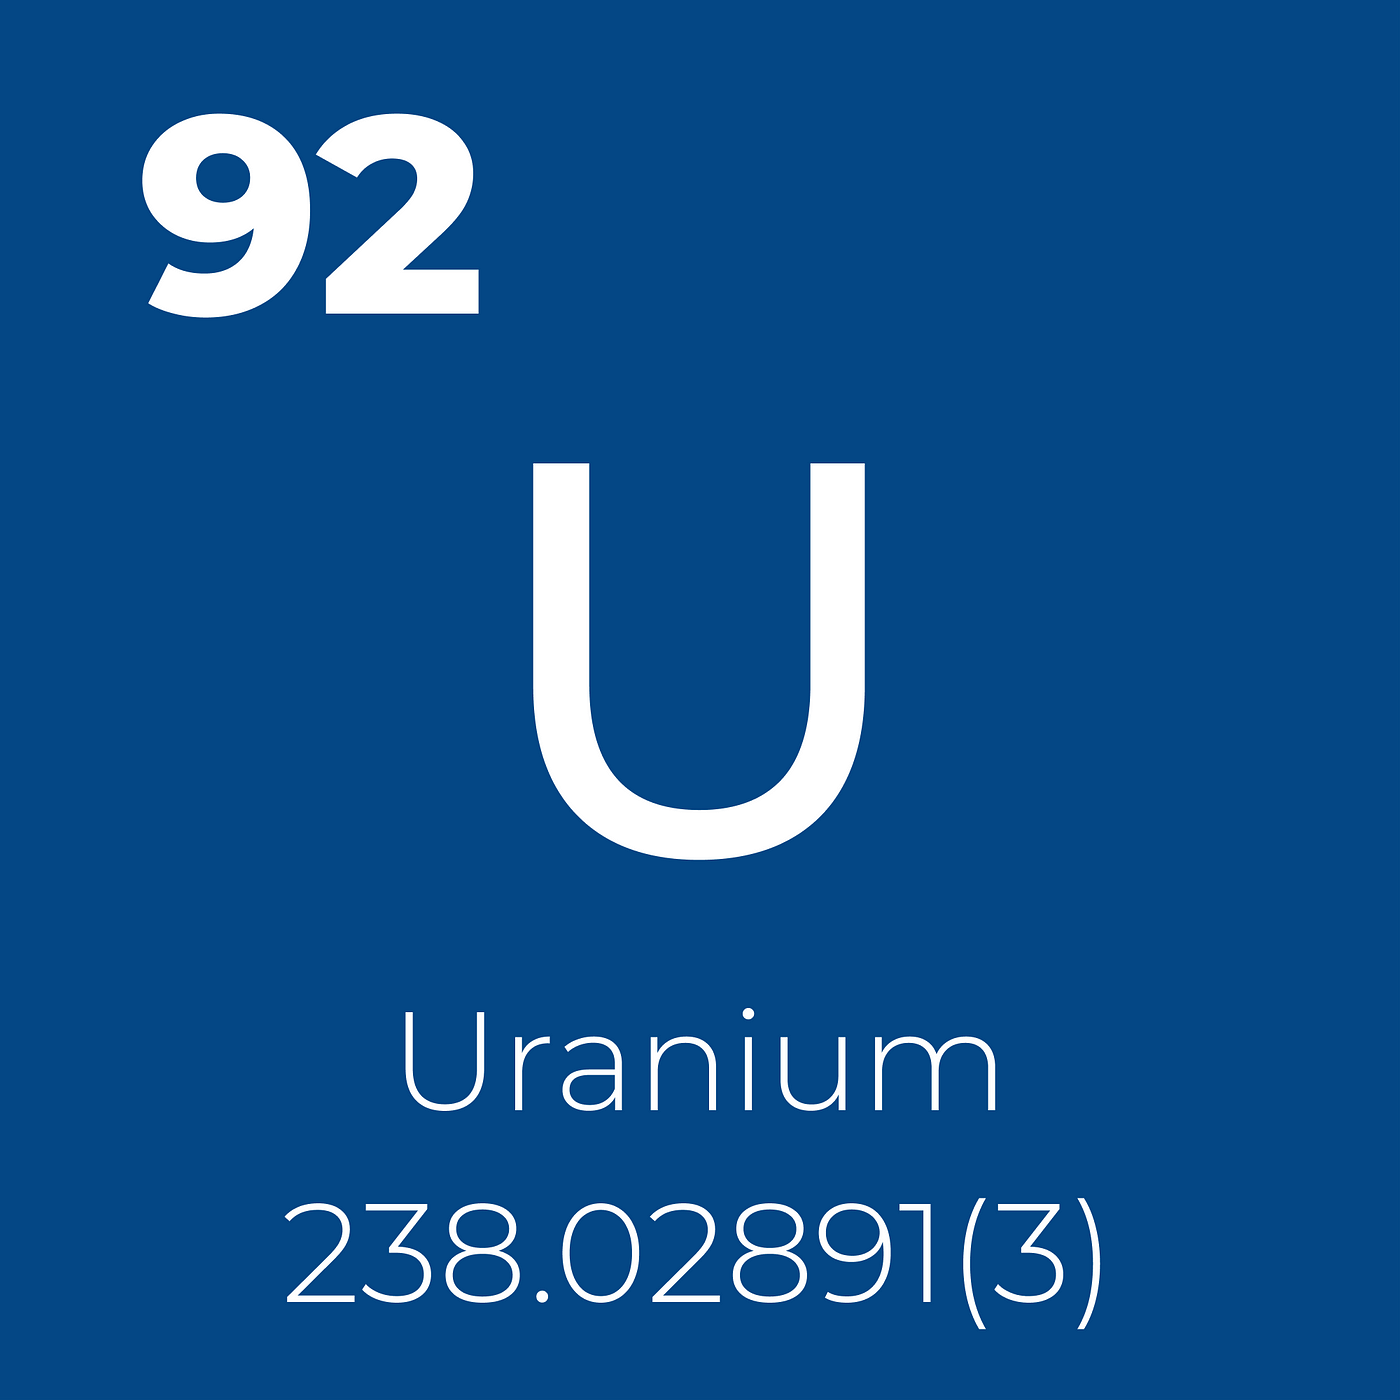 Period table element image of uranium